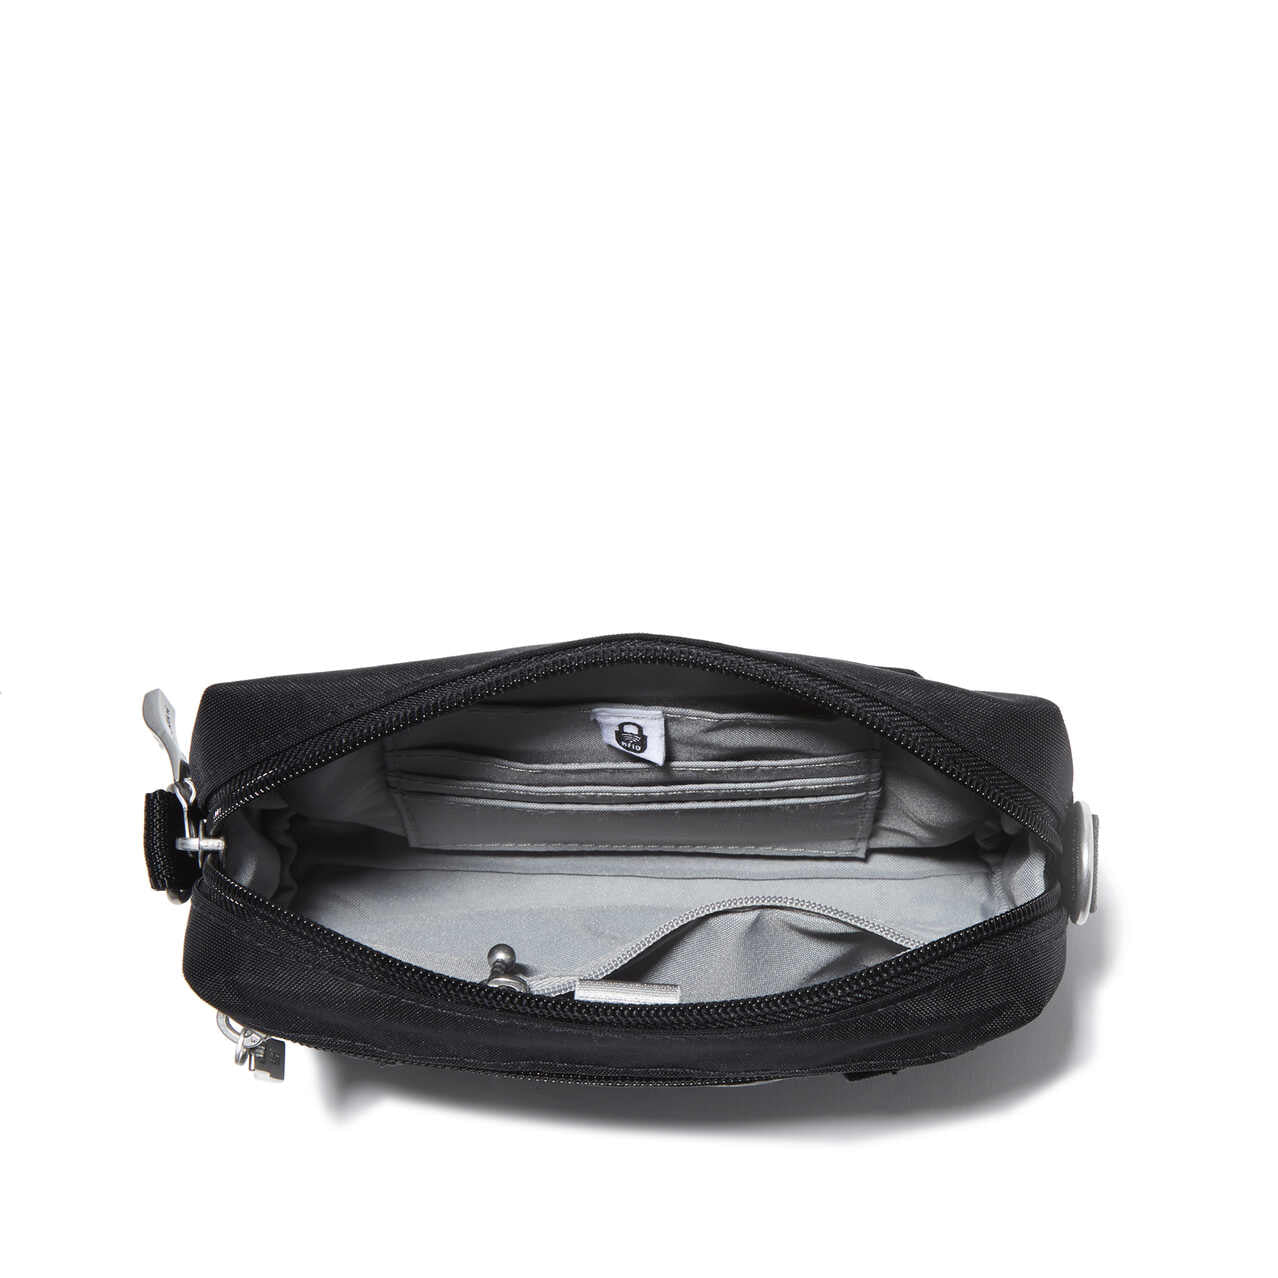 Bagallini 2-in-1 Convertible Belt Bag